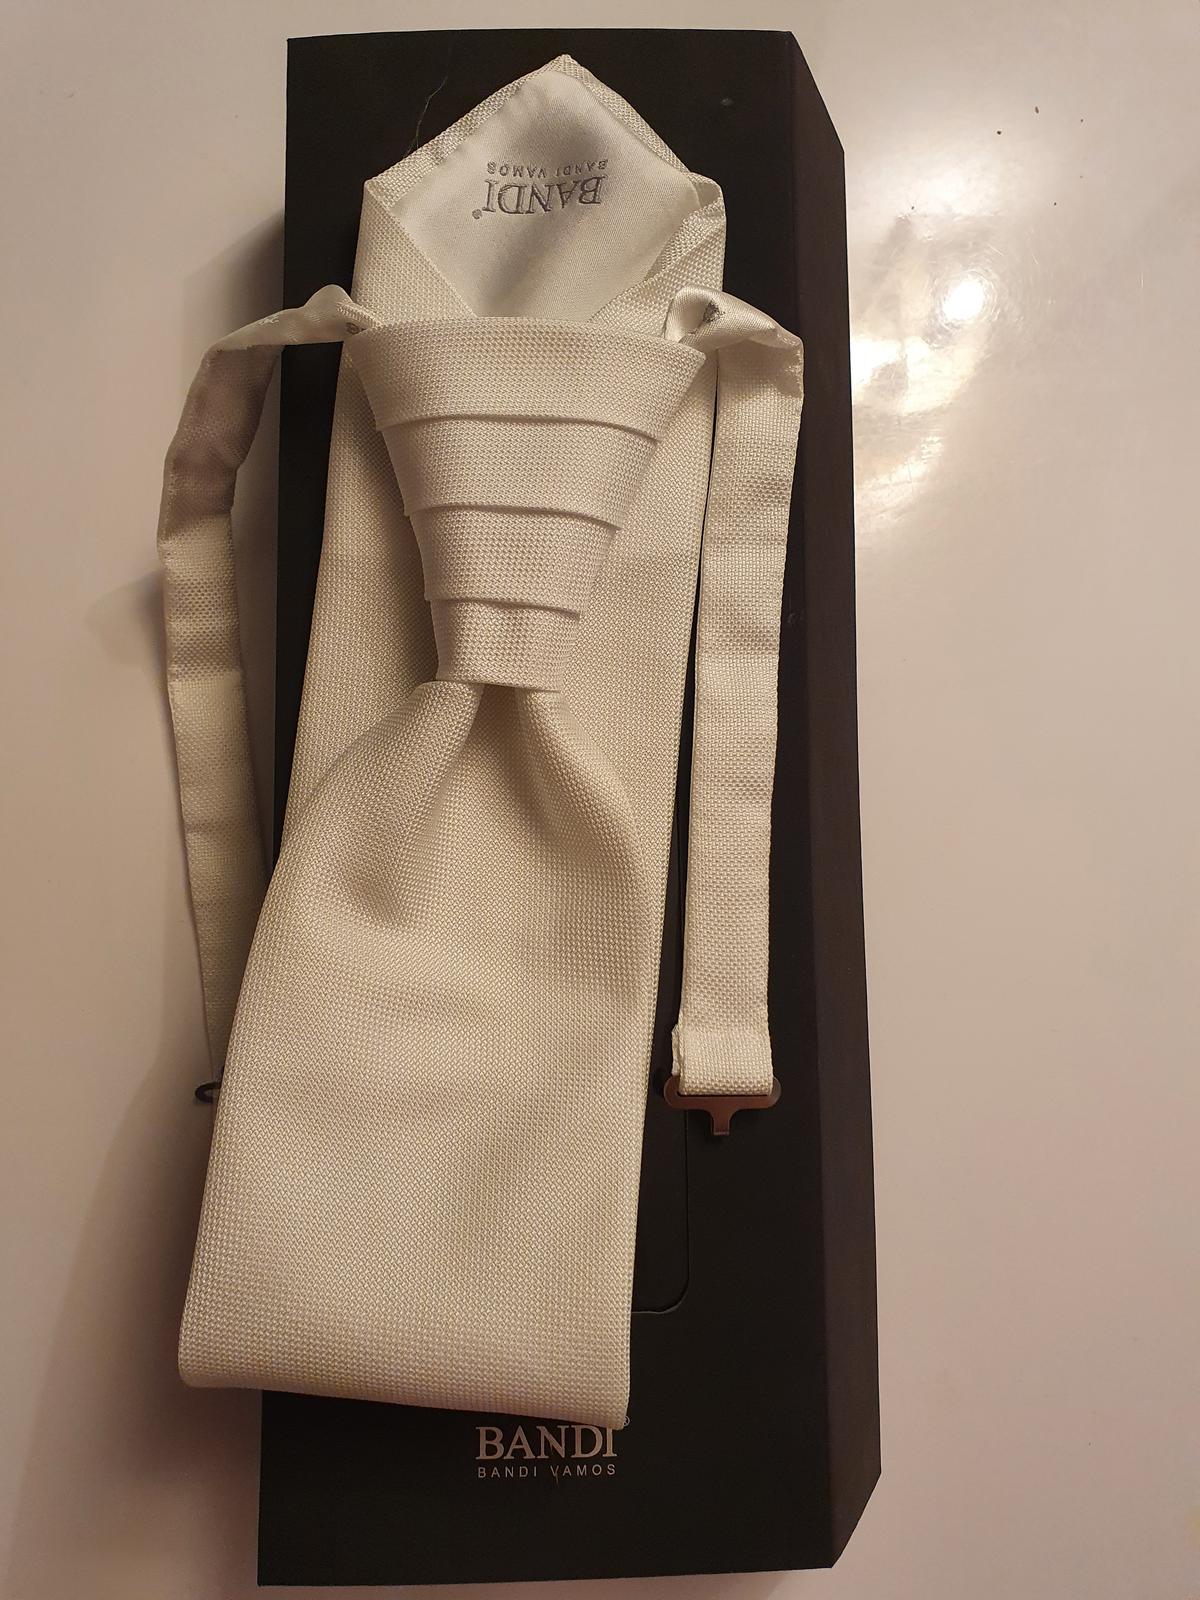 Pánská kravata Bandi + kapesníček - Obrázek č. 1